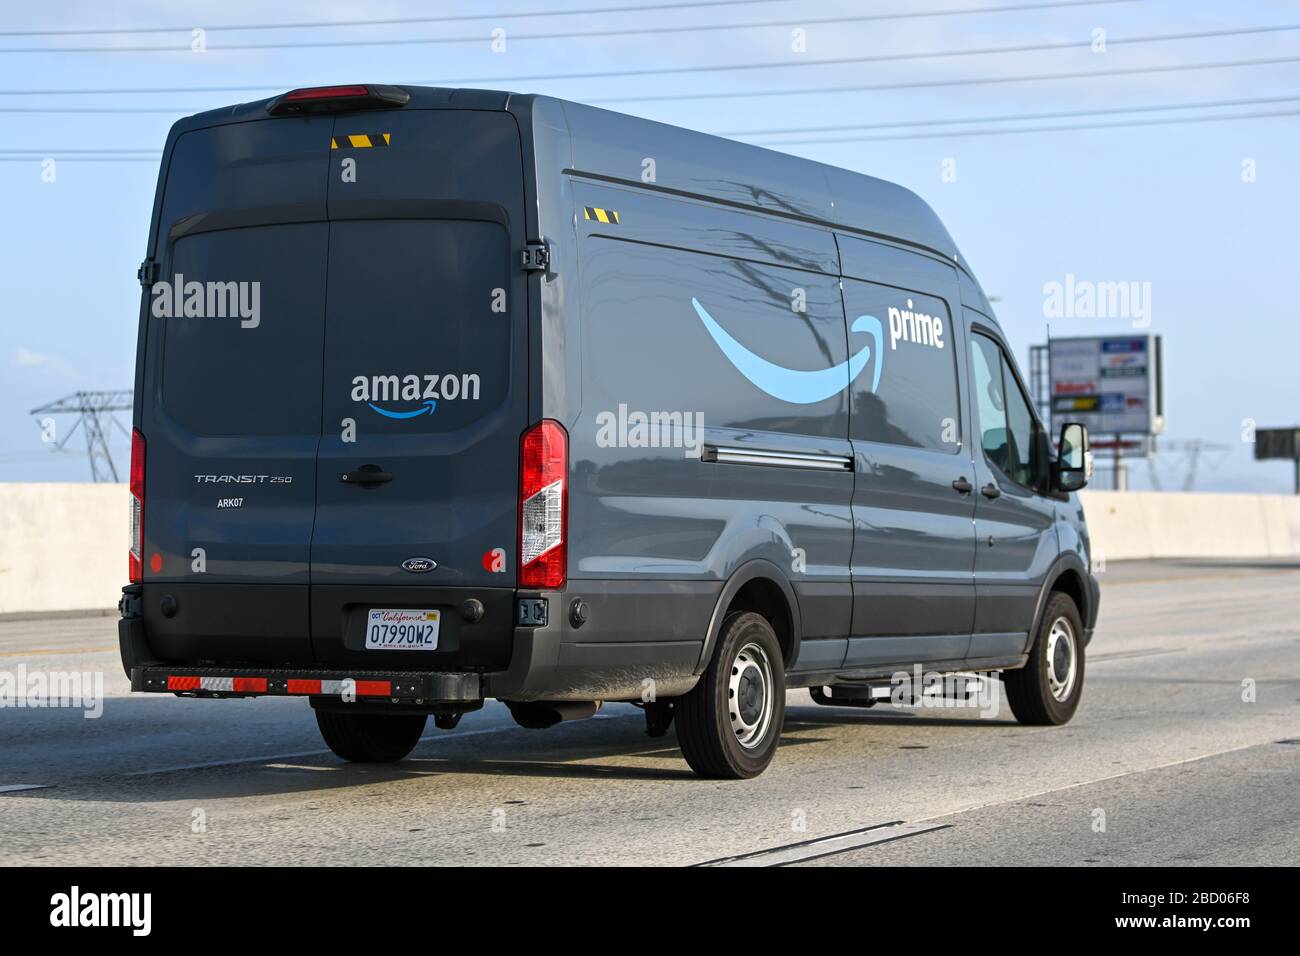 Ein Lieferwagen von Amazon Prime, Ford Transit 250, fährt auf der  Interstate 15 in Richtung Süden, Samstag, 4. April 2020, in Ontario,  Kalifornien, USA. (Foto von IOS/Espa-Images Stockfotografie - Alamy